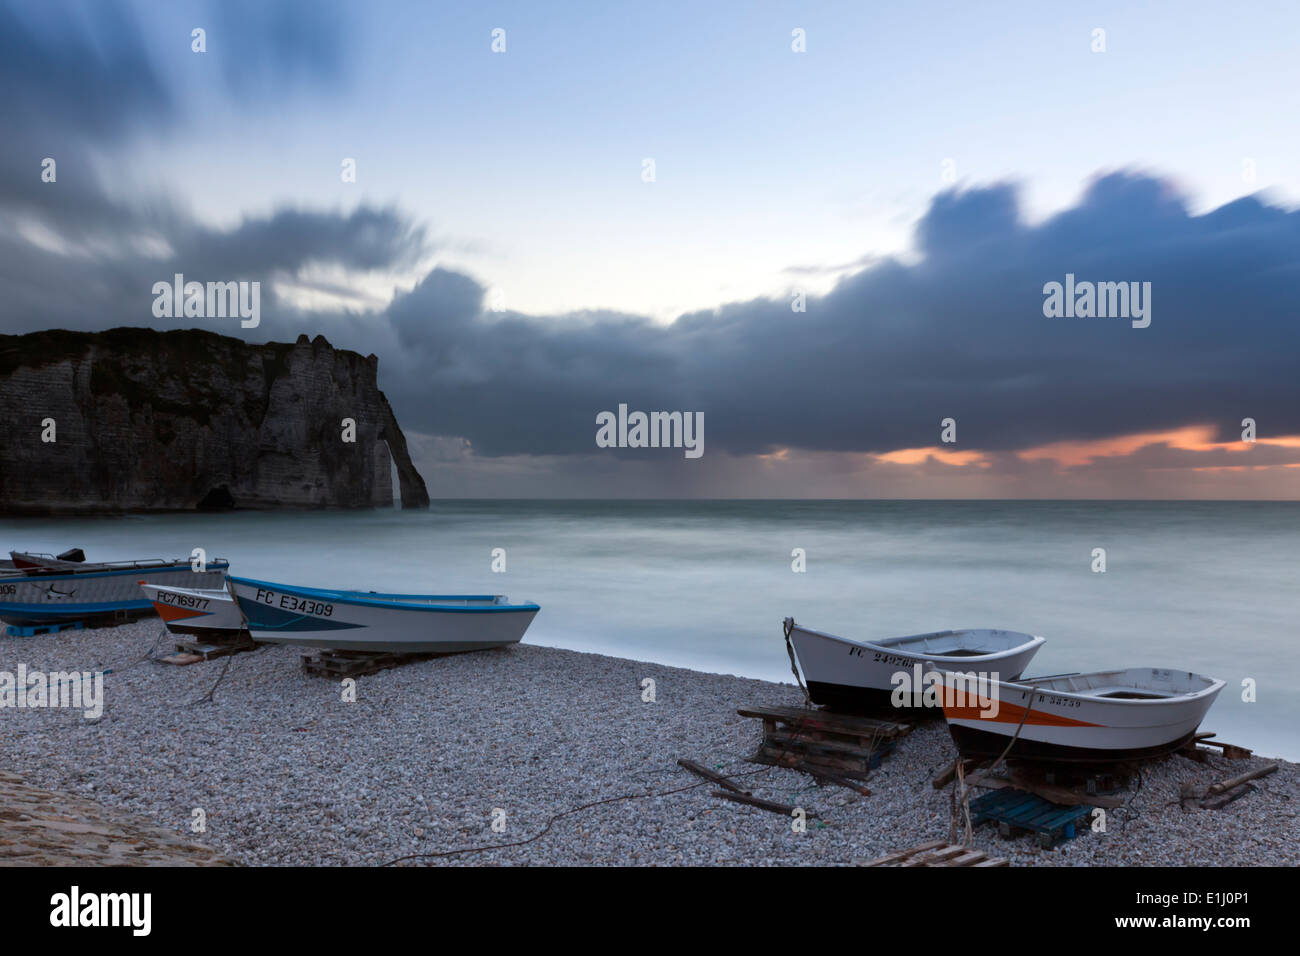 Bateaux sur la plage d'Etretat, Normandie, au coucher du soleil. Porte d'Aval, arche naturelle en arrière-plan. Longue exposition. Banque D'Images